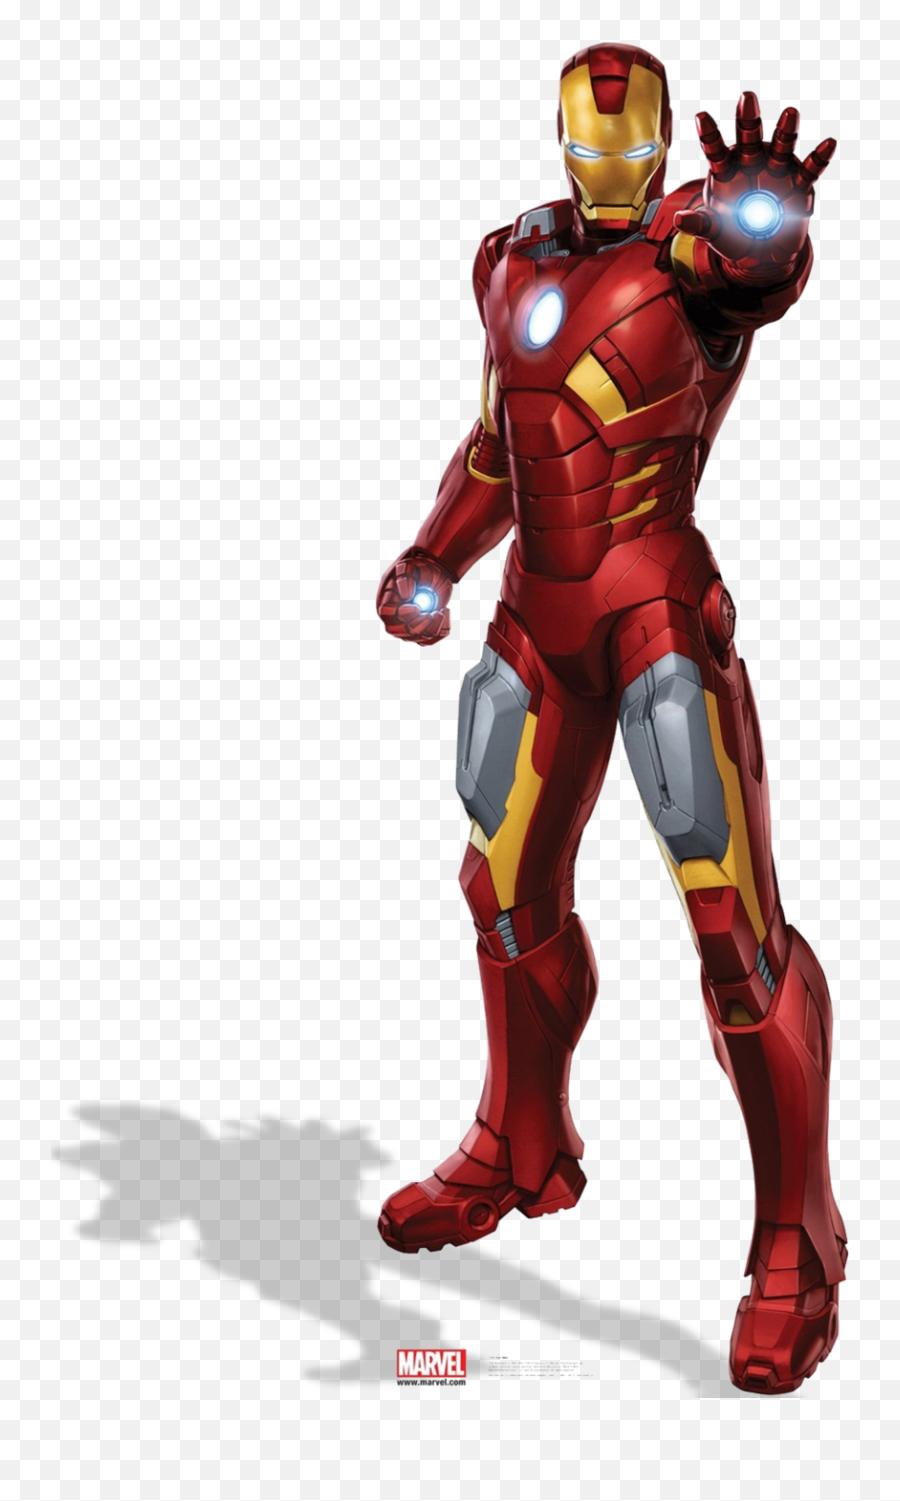 Ironman Png - Iron Man Png Hd,Iron Man Transparent